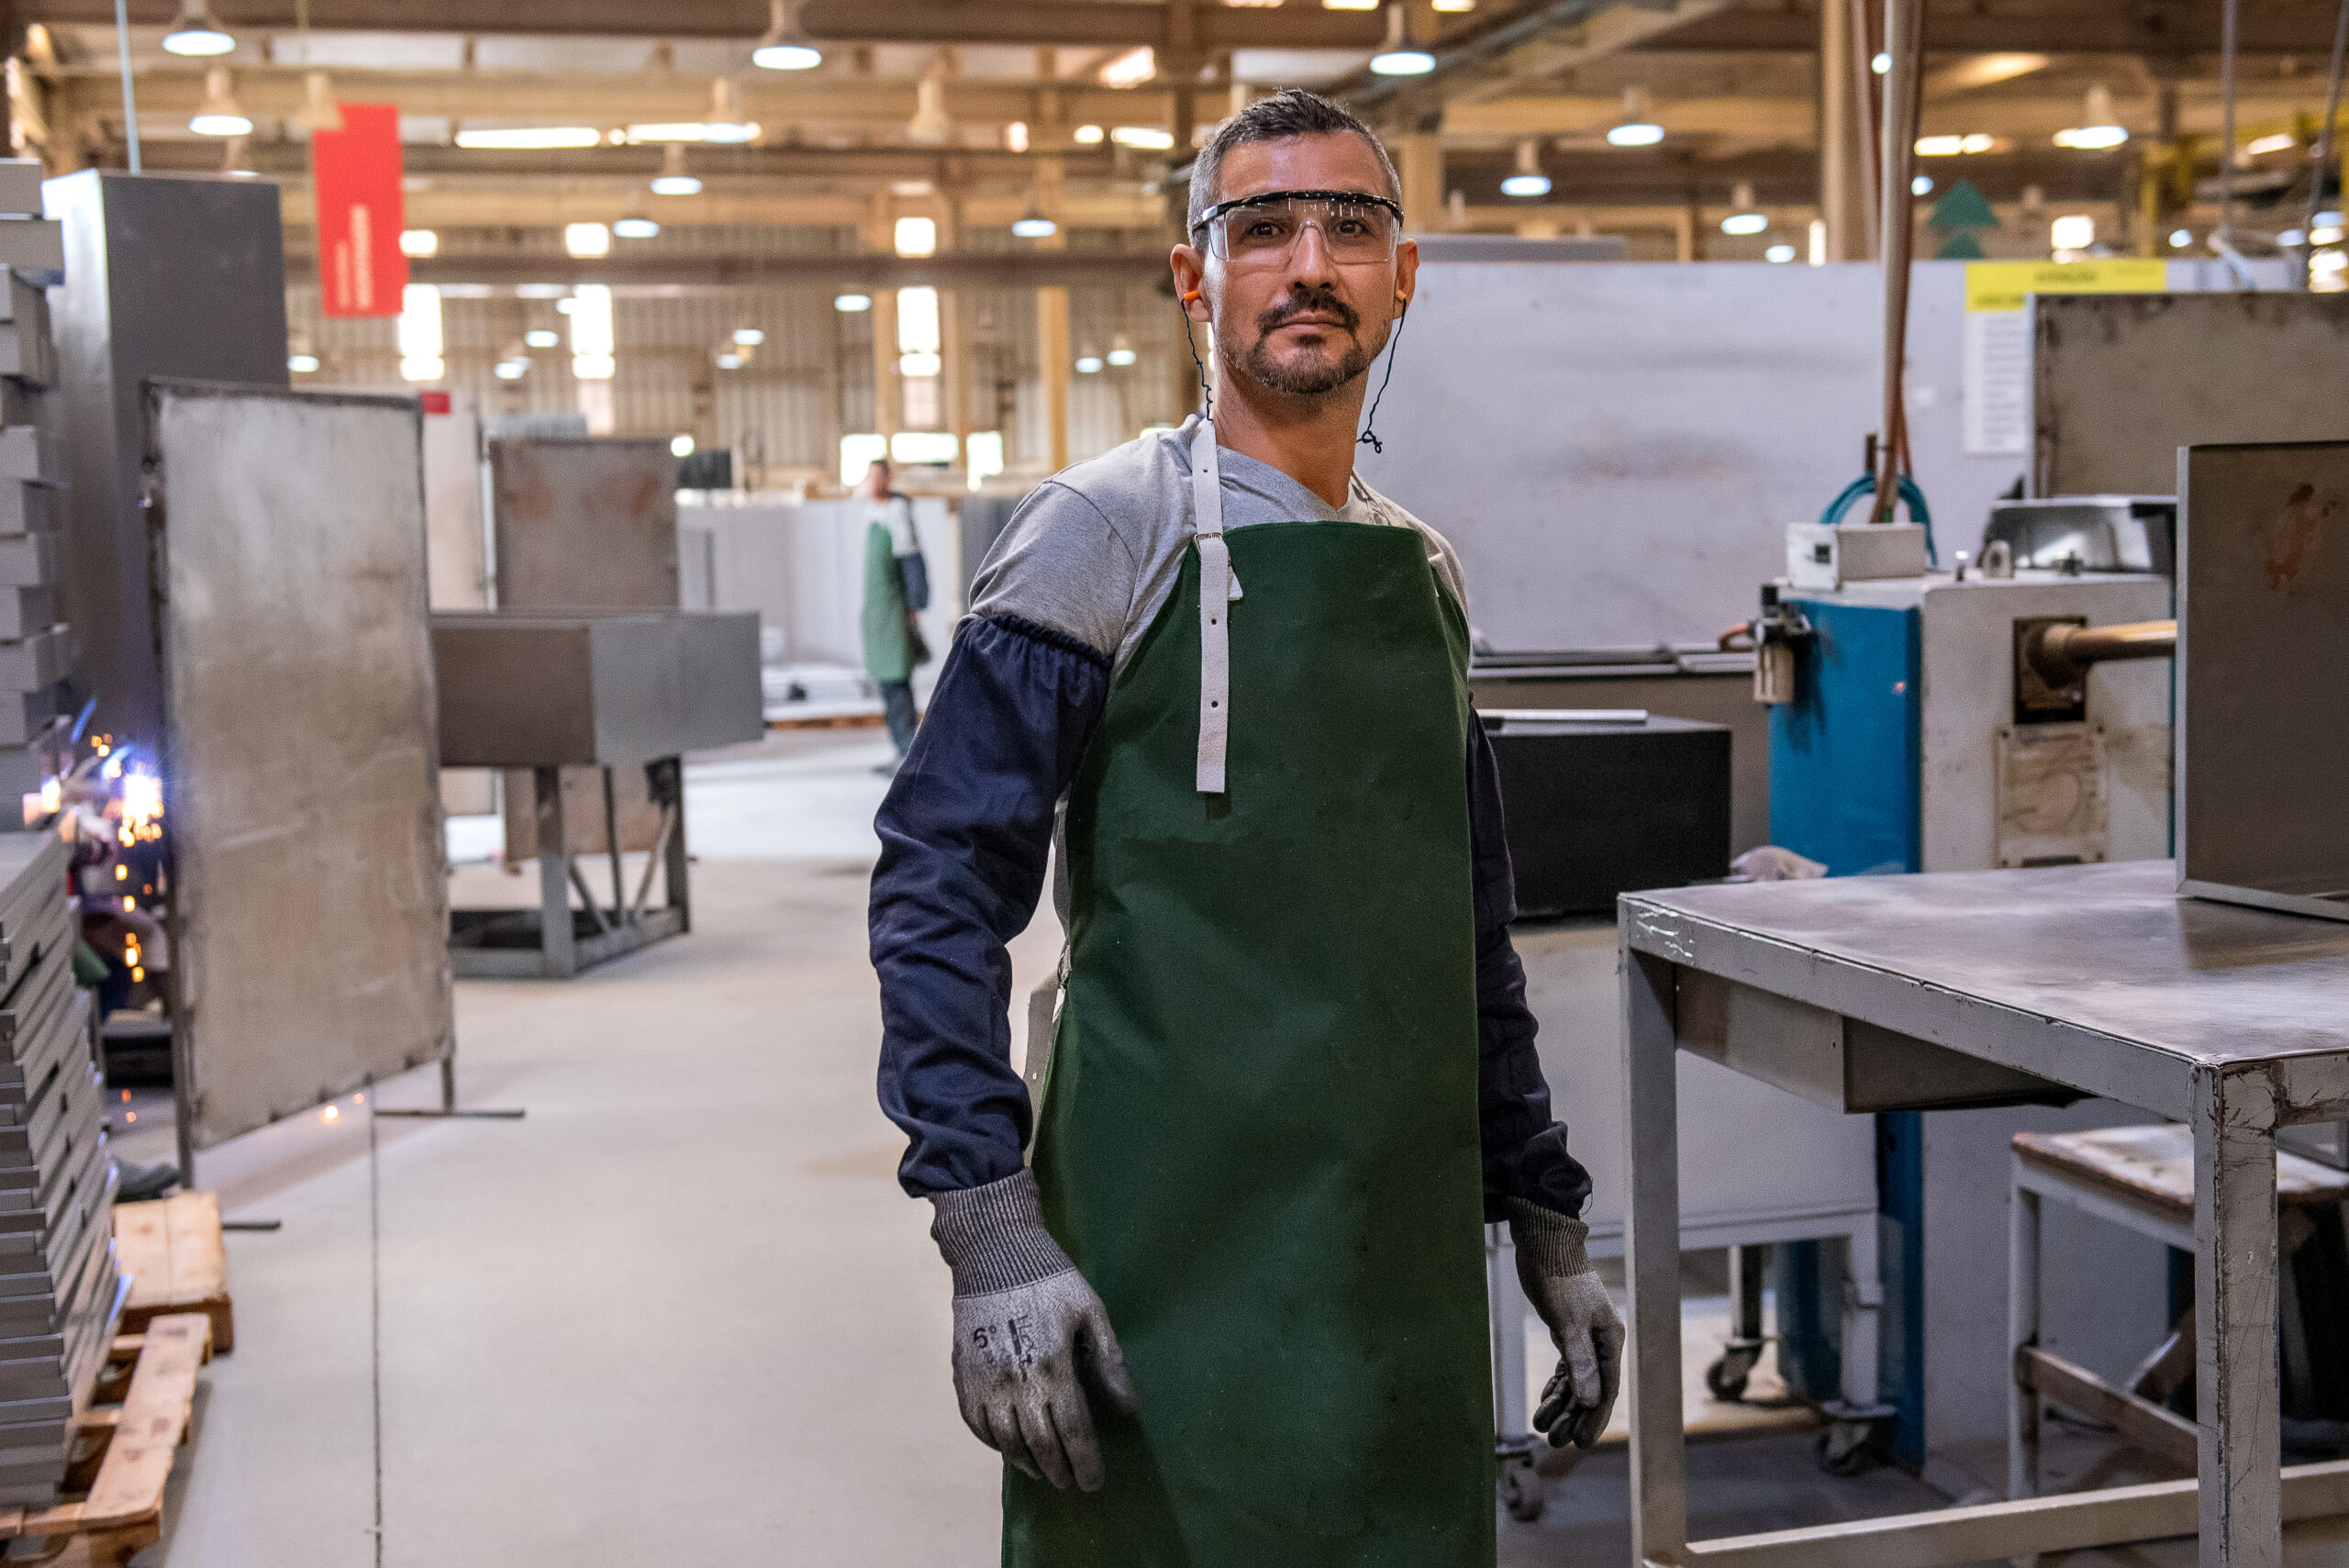 A imagem apresenta em primeiro plano um homem de pele clara e cabelos grisalhos, vestido avental, luvas e viseiras de segurança, enquanto exerce seu trabalho em uma fábrica